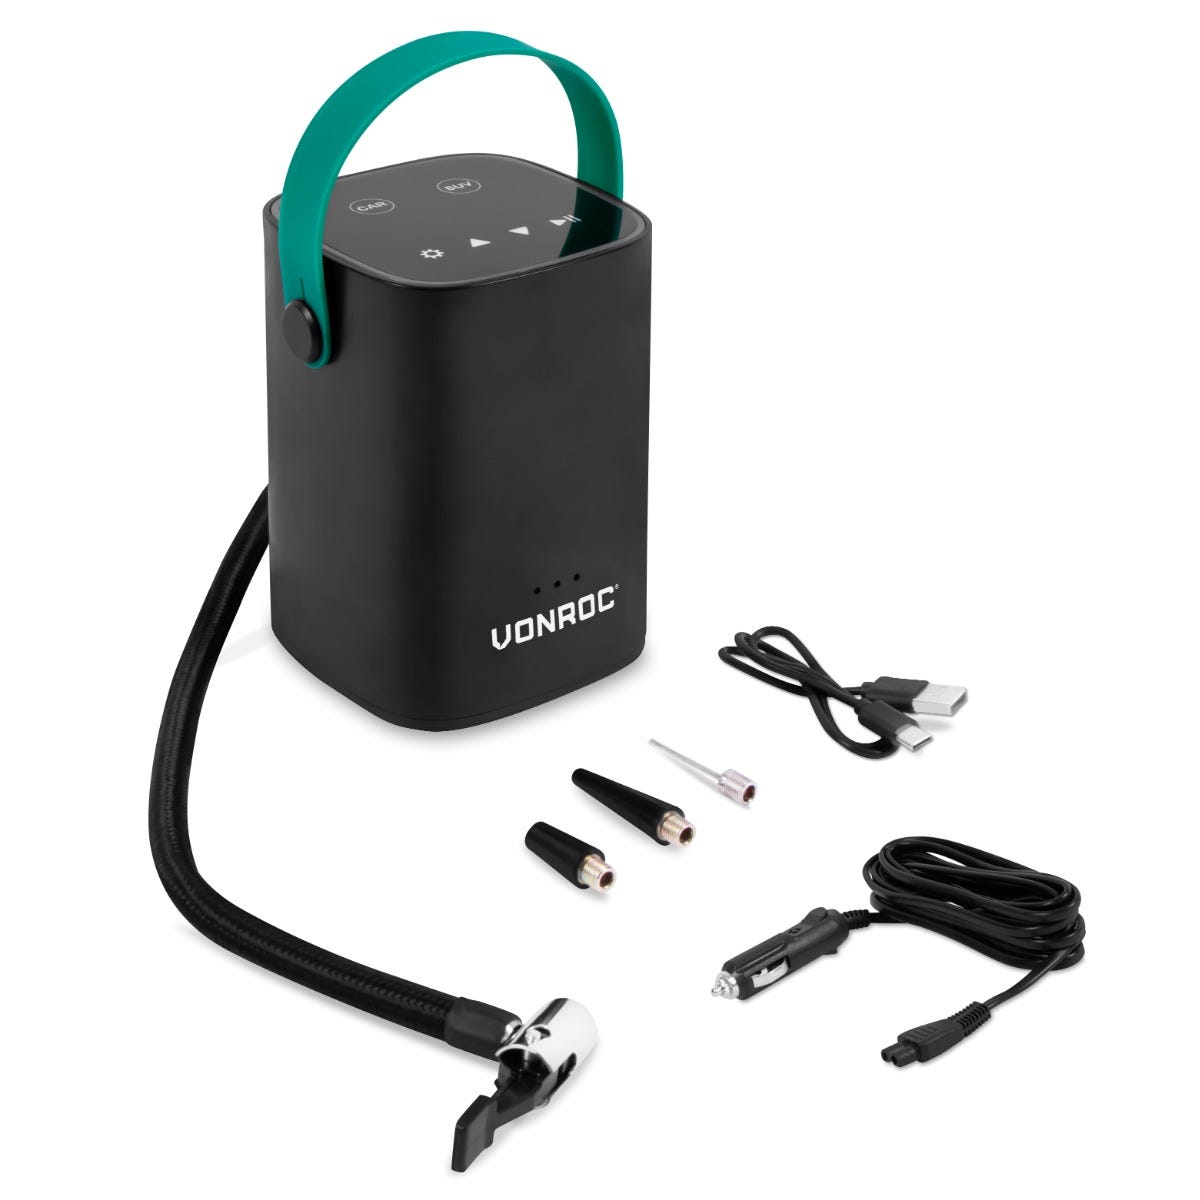 Compressore portatile mini VONROC 12V 7 bar / 101 PSI per auto, moto e  bici. Con batteria integrata da 2.0Ah. Display digitale / manometro